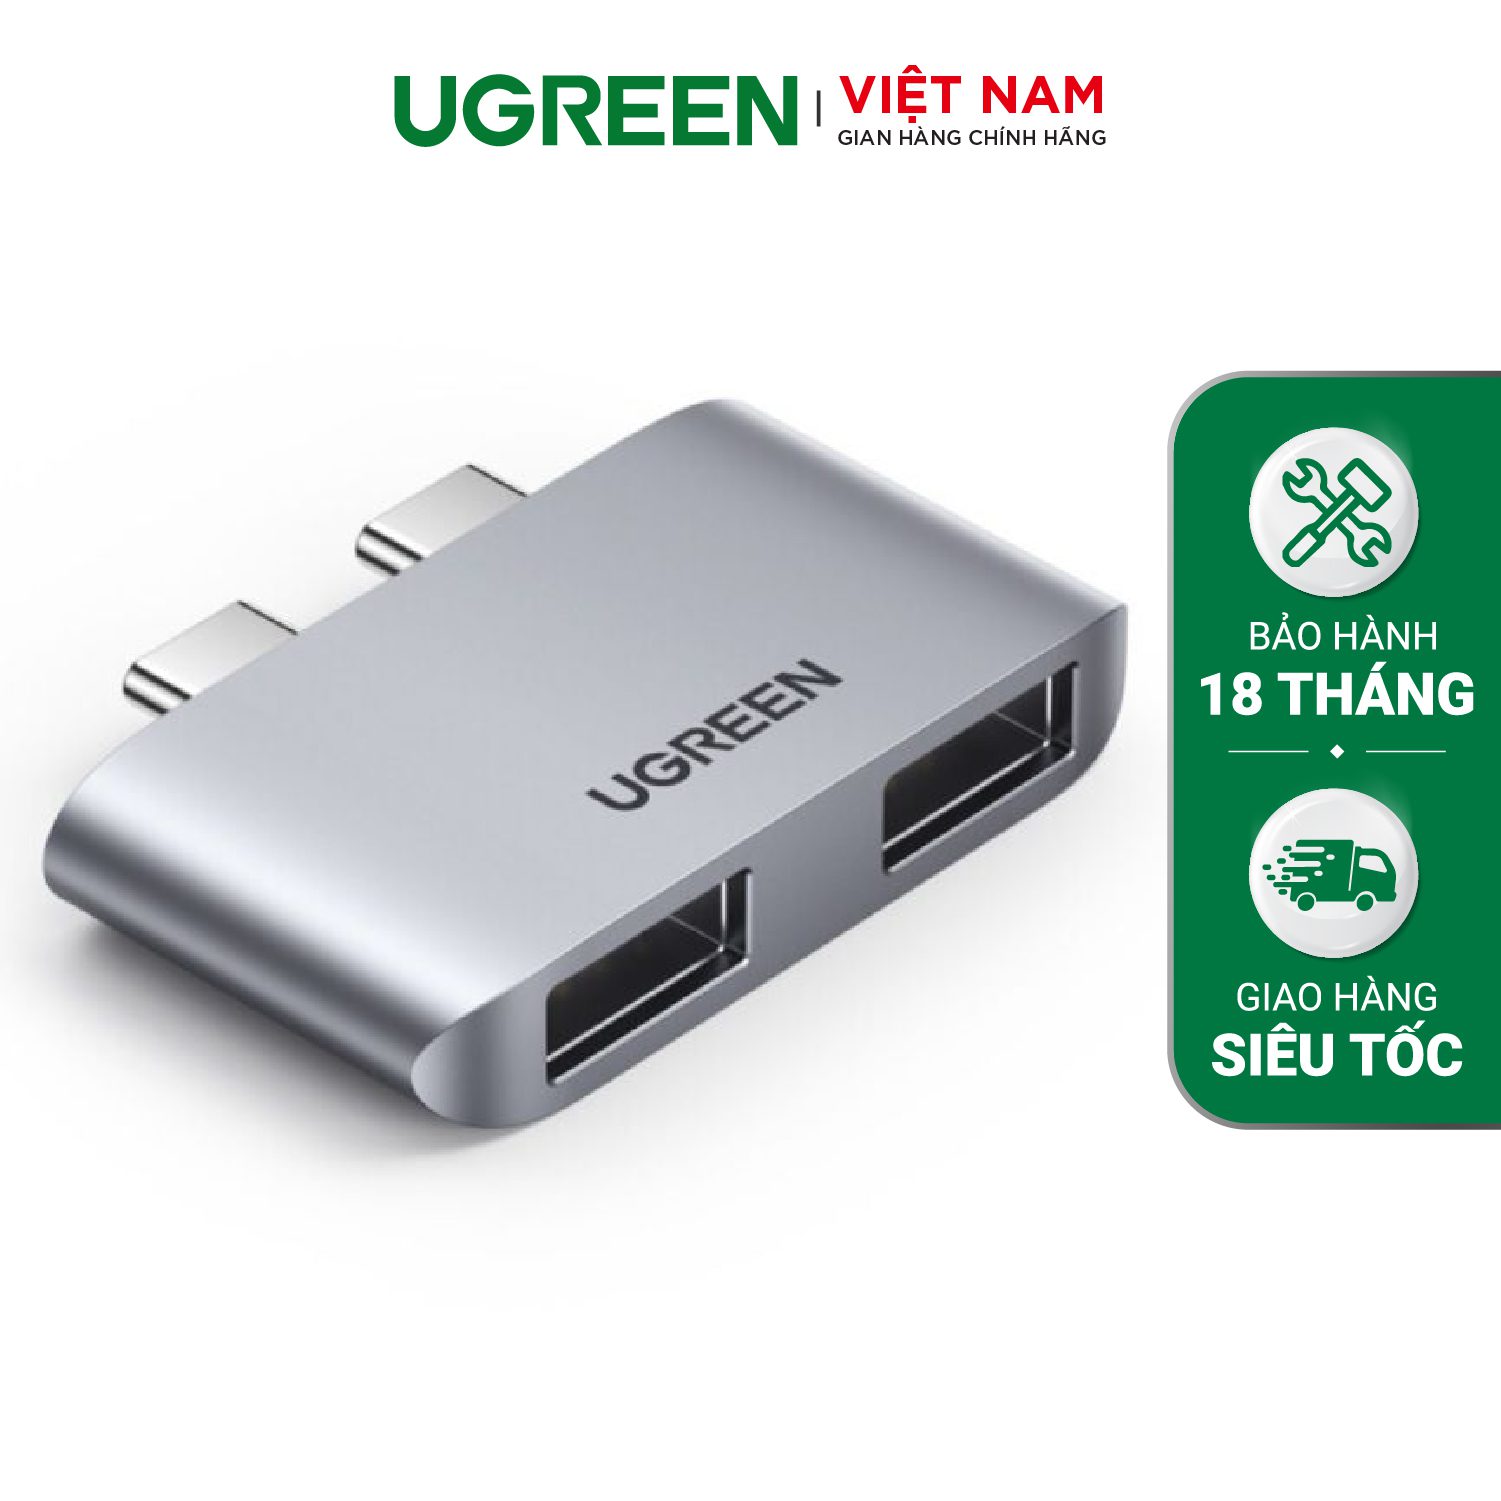 Bộ chuyển Type C sang USB 3.1 UGREEN 10913 - Hỗ trợ cho Macbook - Tốc độ truyền tải lên đến 10Gbps – Ugreen Việt Nam